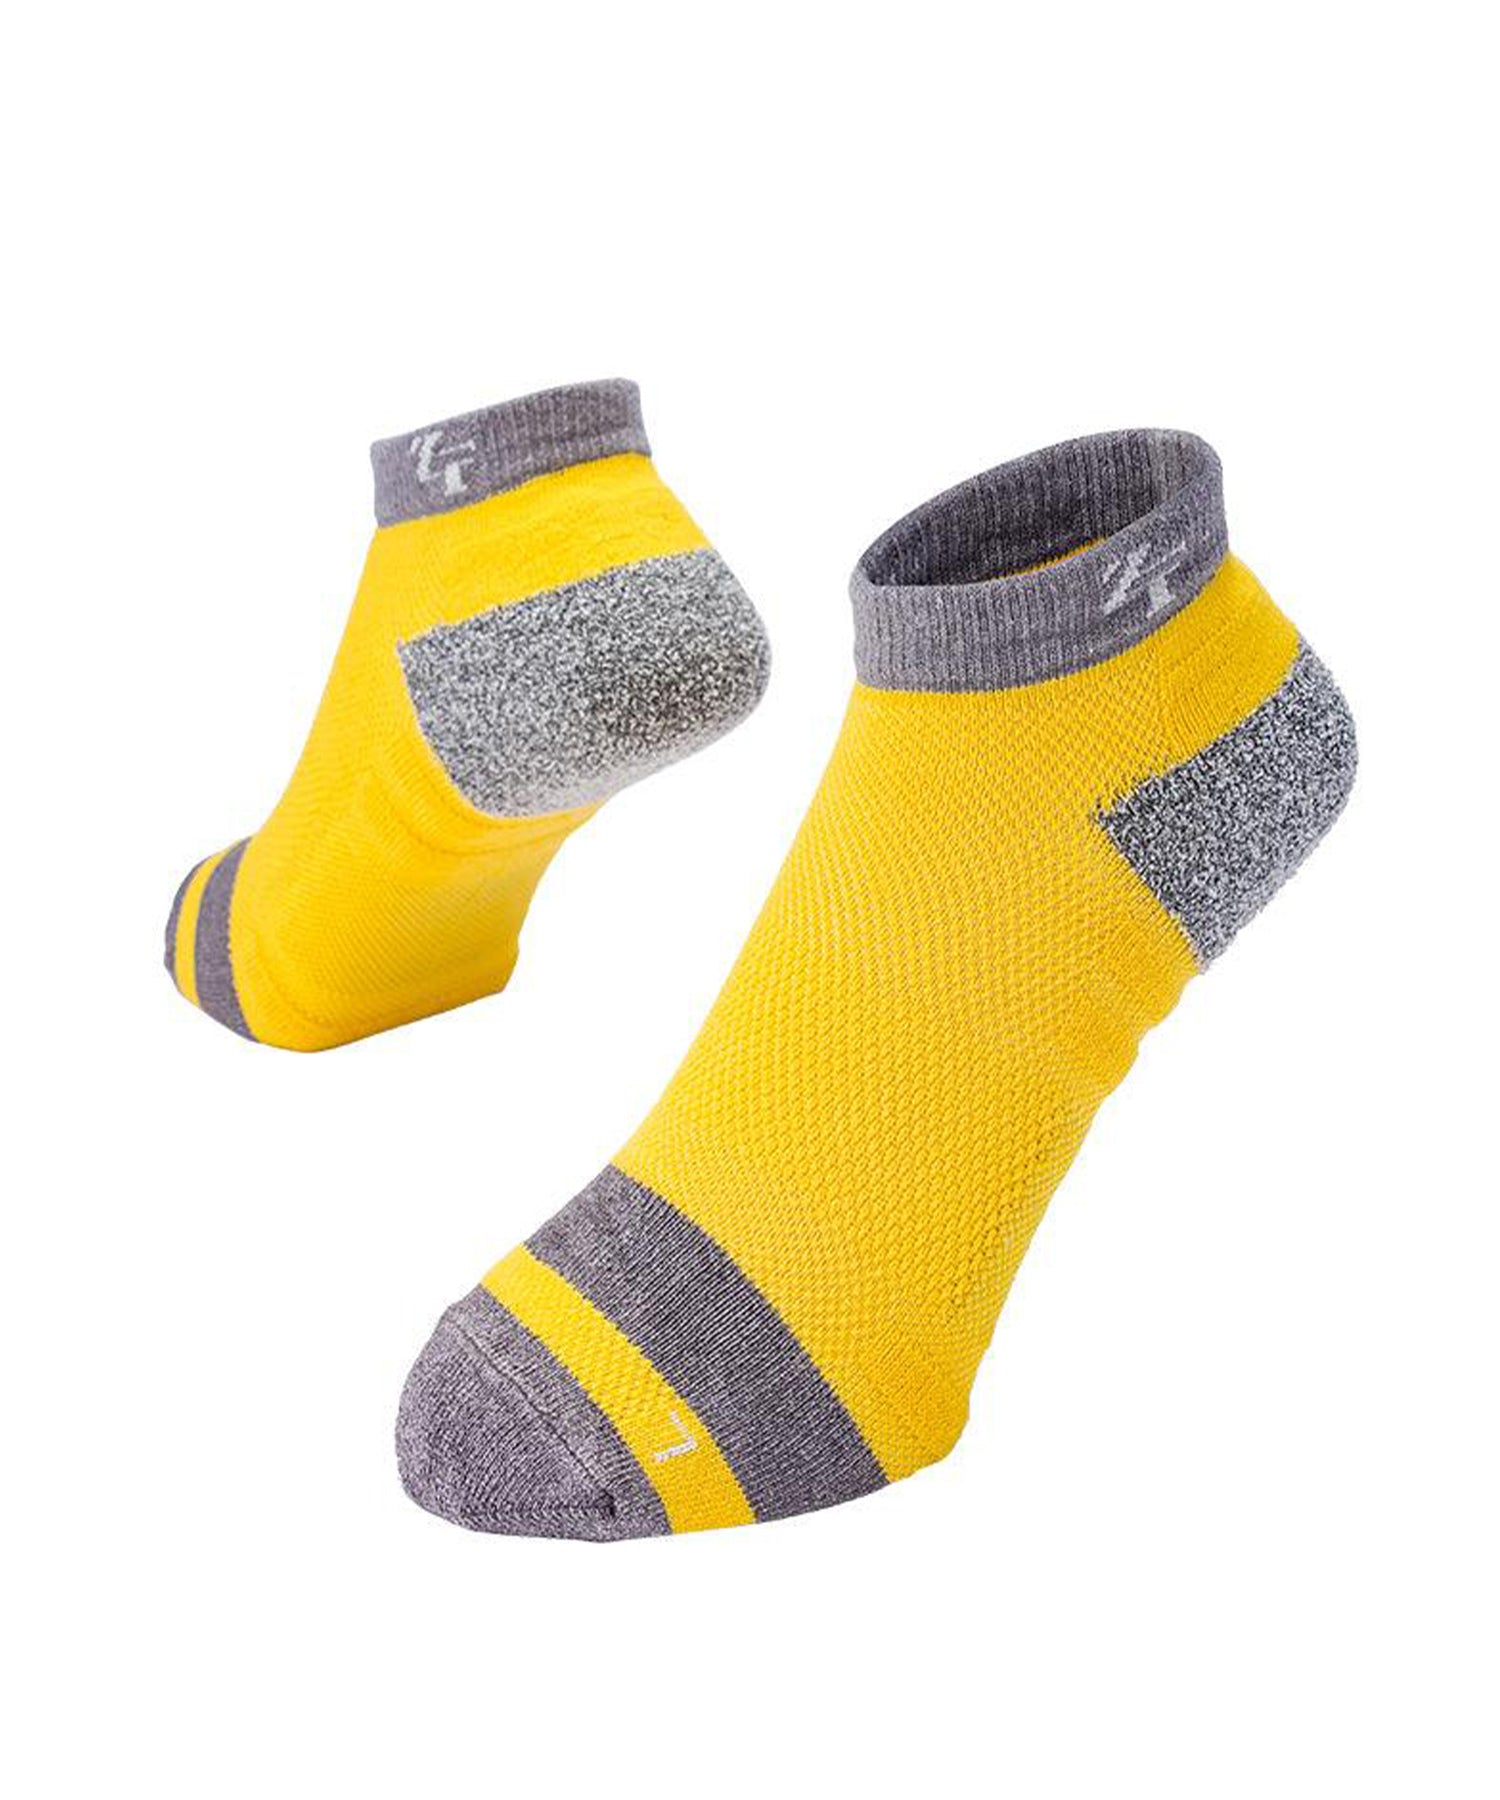 Nano hybrid socks short